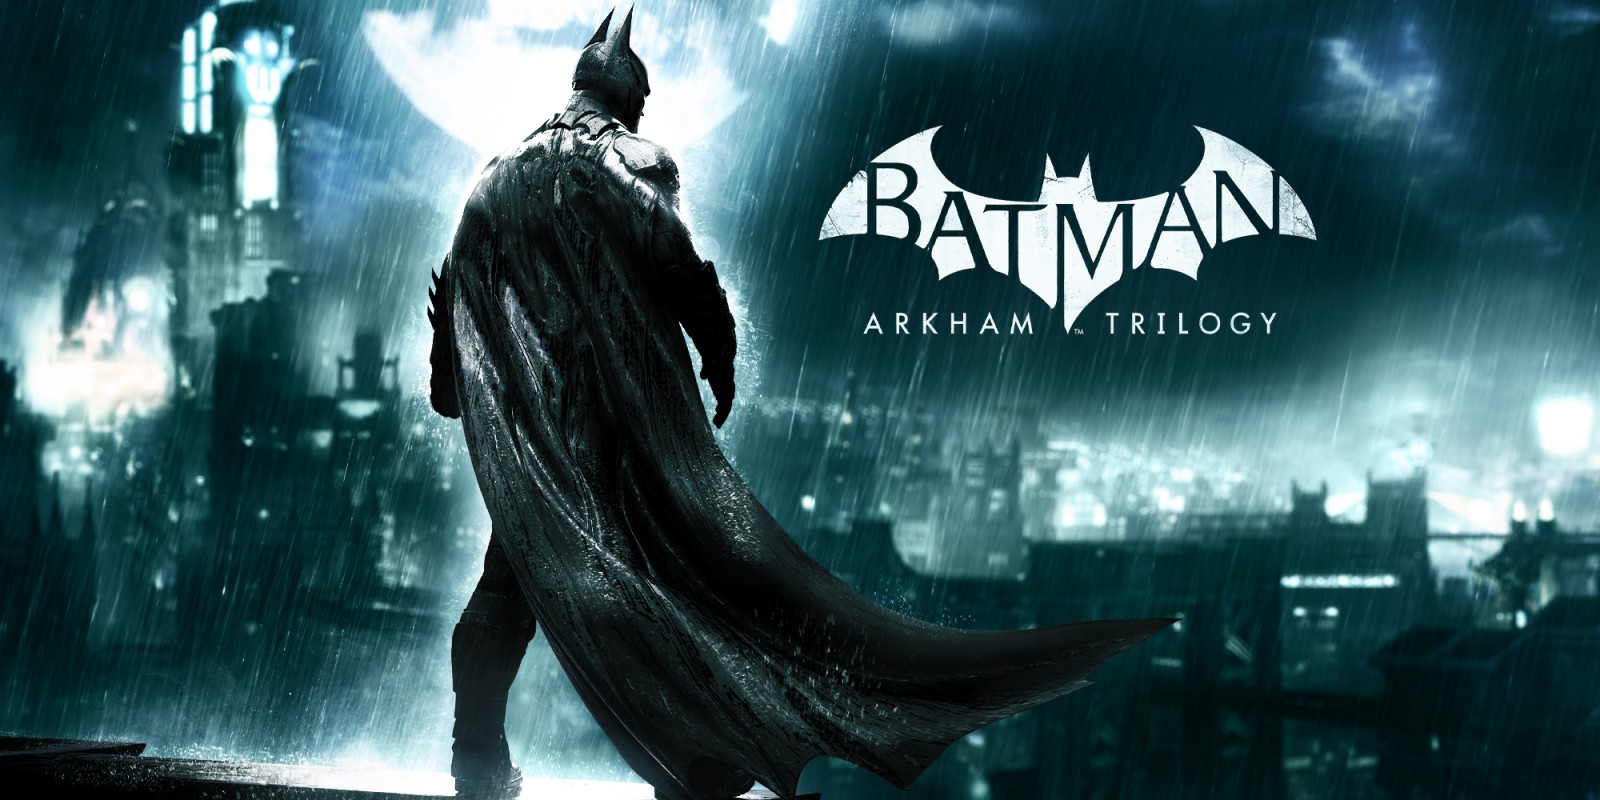 Batman: Arkham Trilogy – October 13th